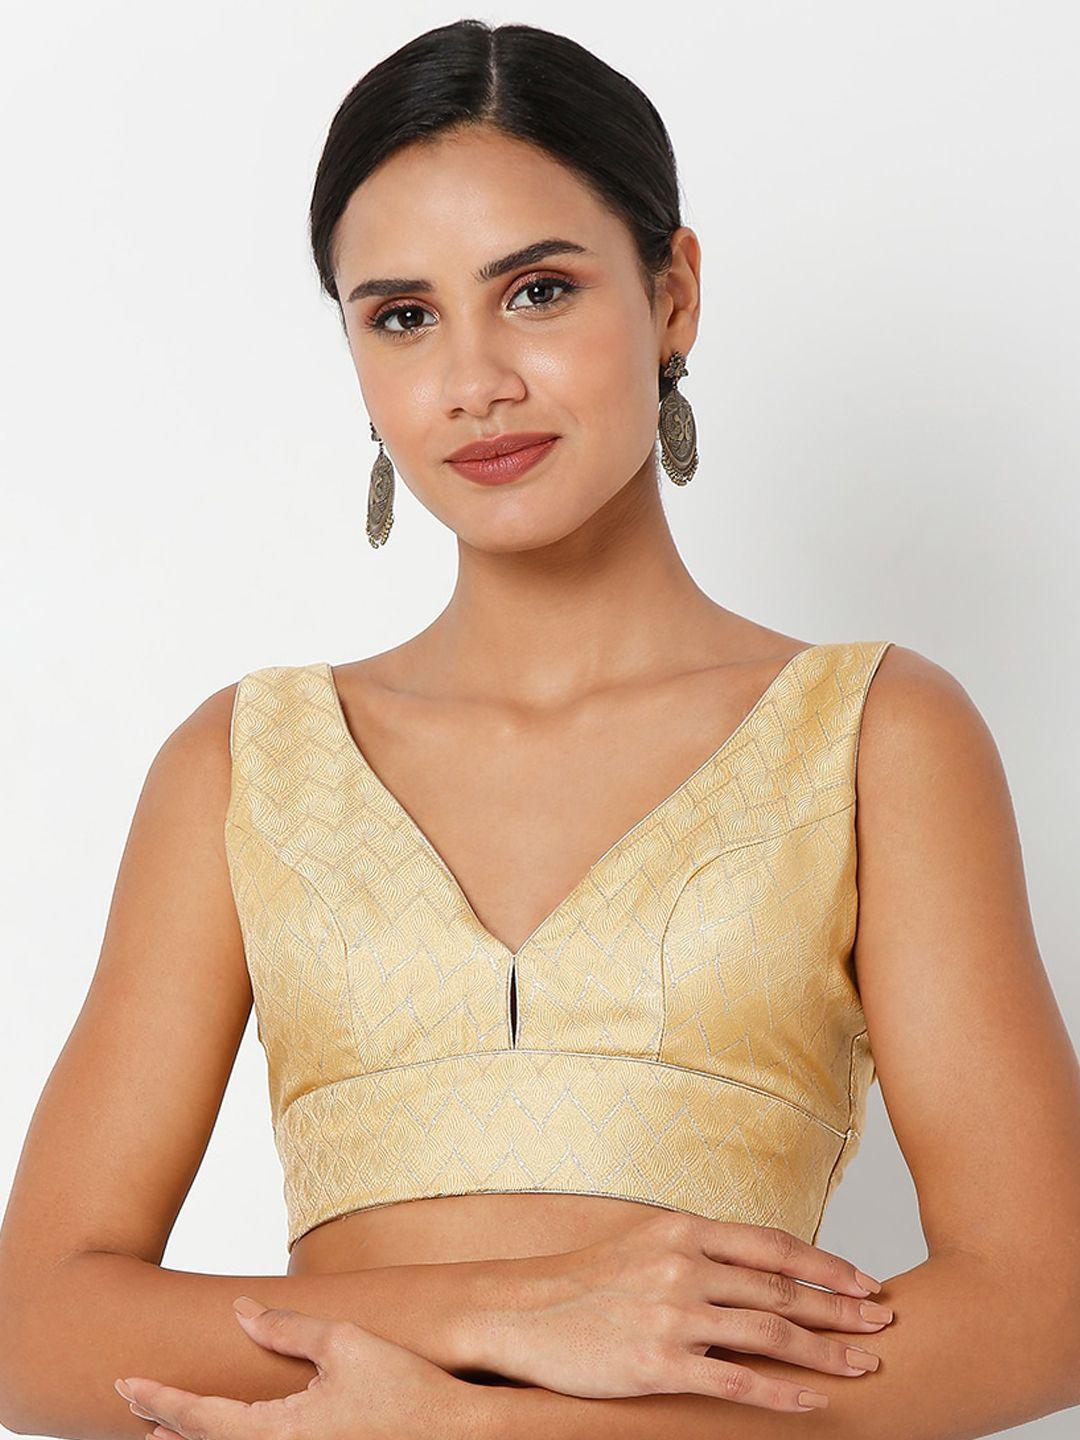 salwar studio  gold-toned solid brocade saree blouse